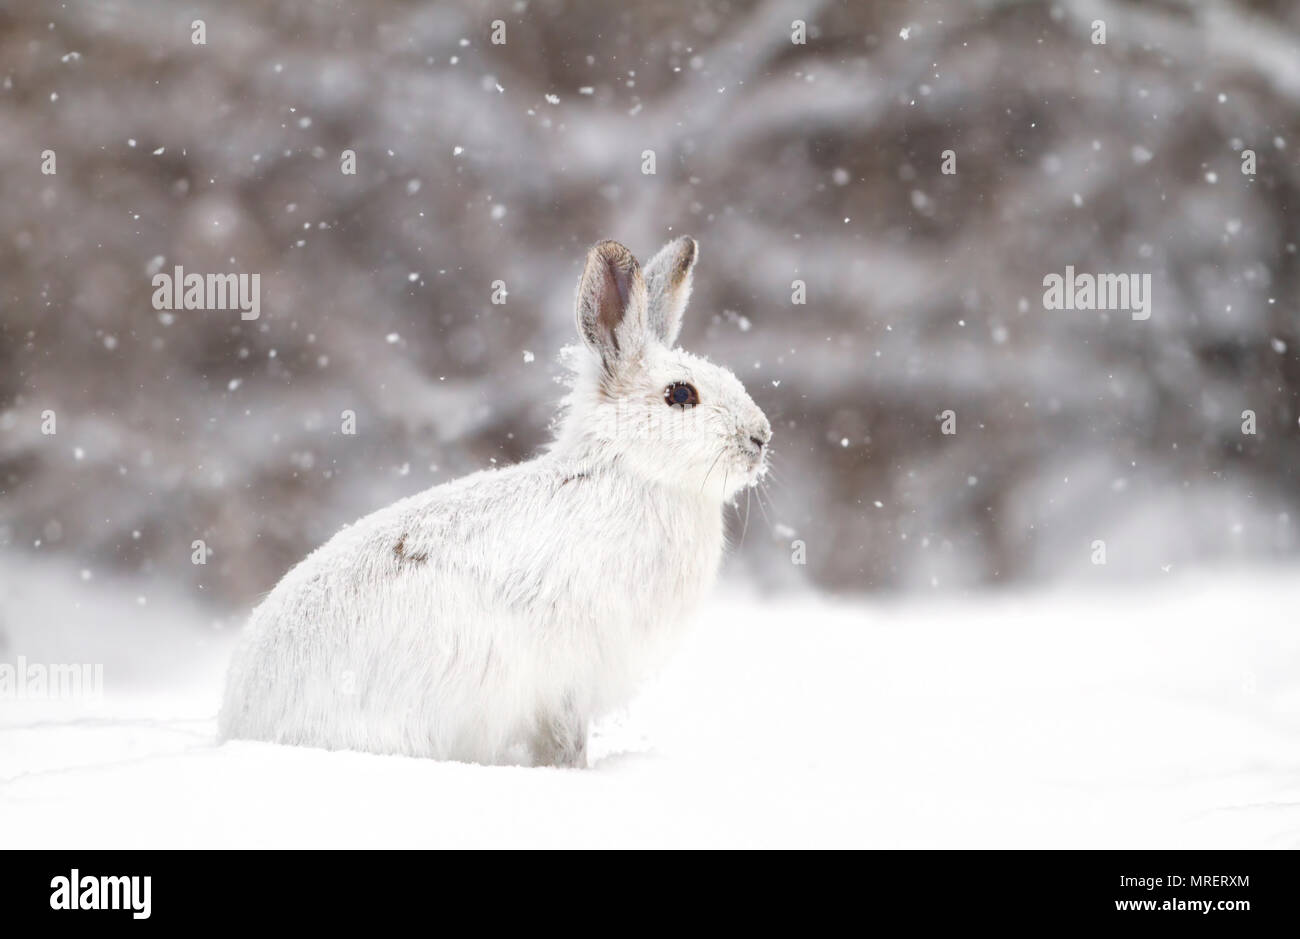 Le lièvre ou diverses espèces de lièvre (Lepus americanus) debout dans la neige avec un manteau blanc en hiver au Canada Banque D'Images